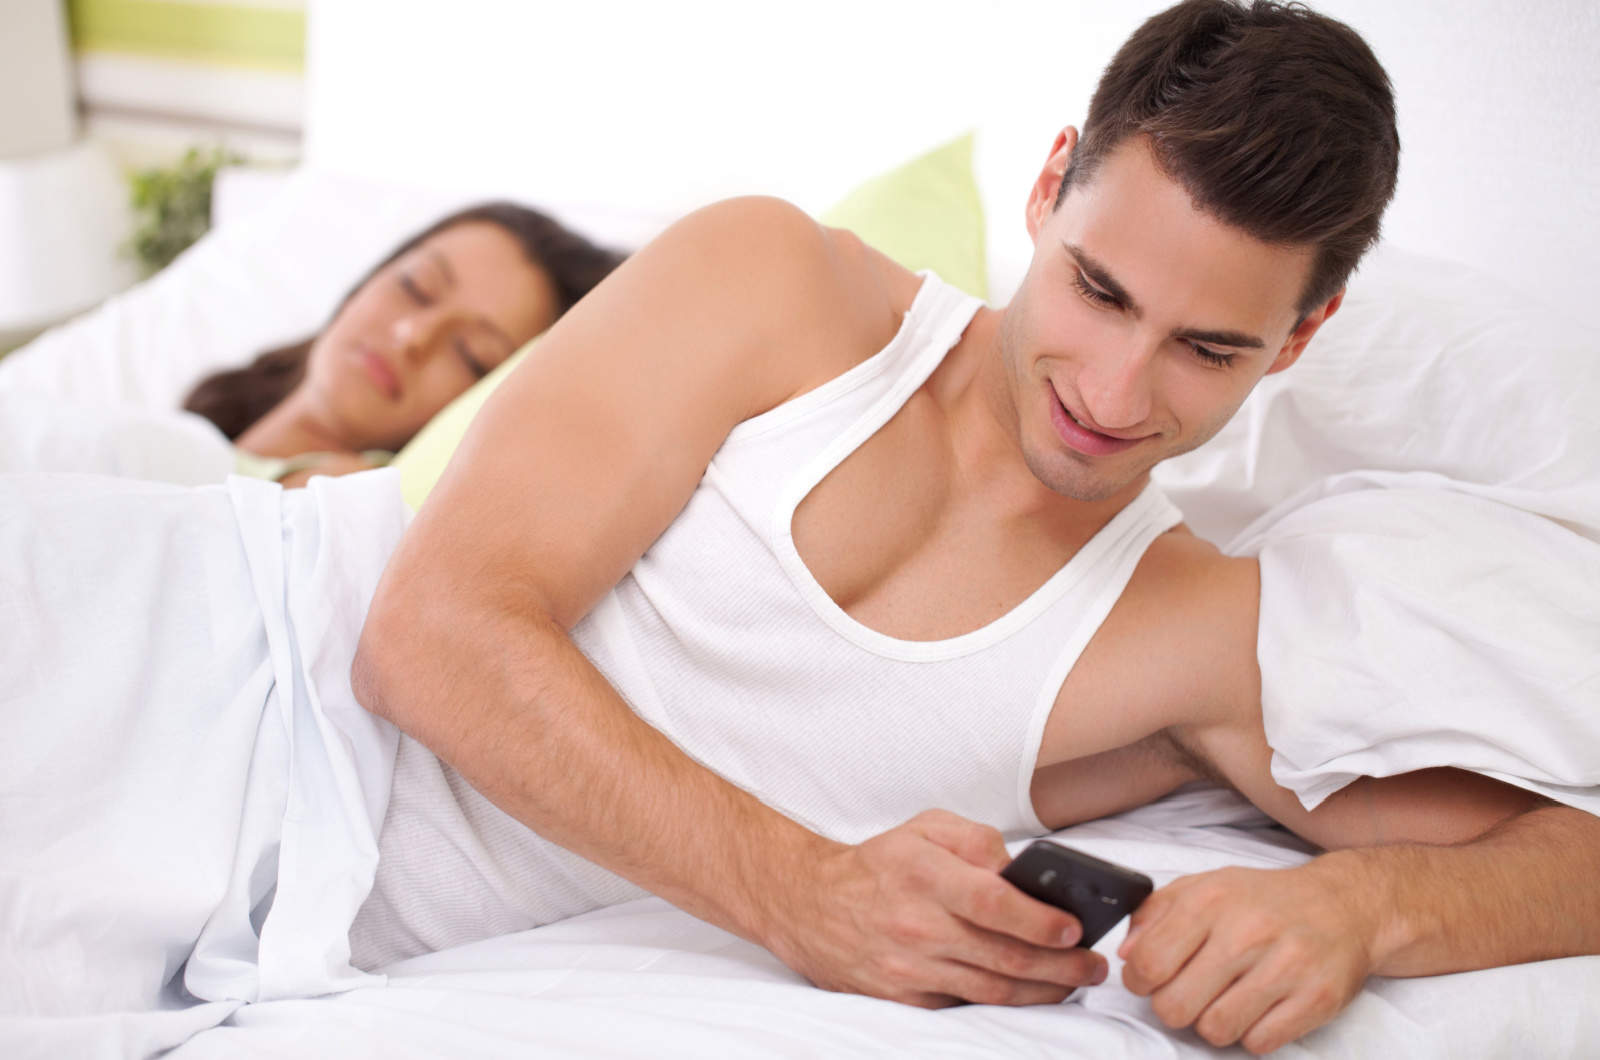 Junge Männer unterhalten sich mit seiner Geliebten, während seine Frau schläft